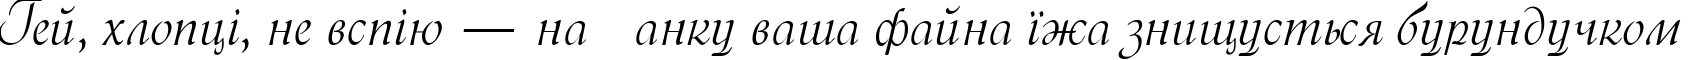 Пример написания шрифтом Menuet script текста на украинском